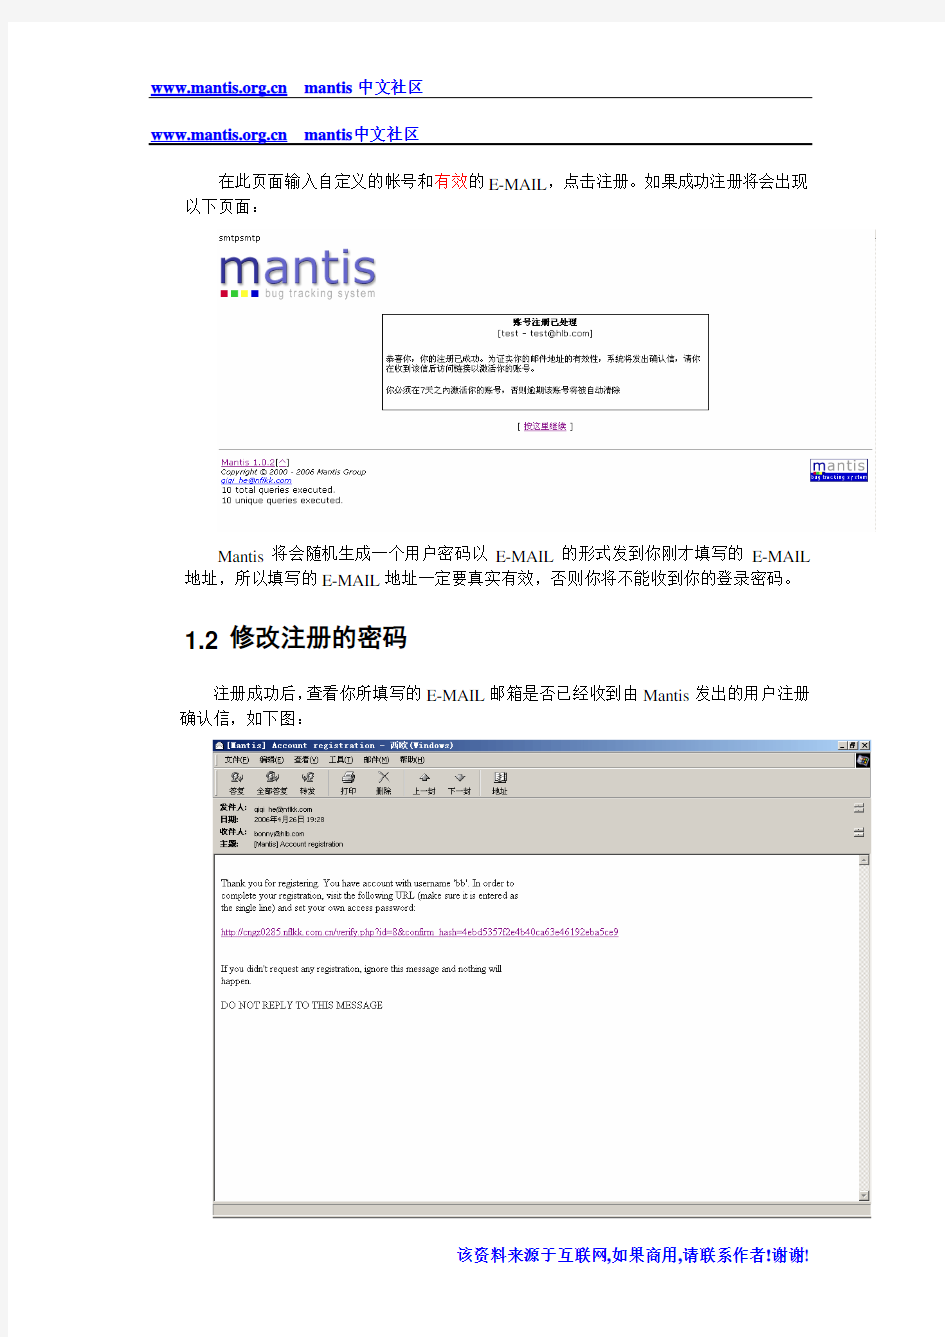 Mantis中文使用说明